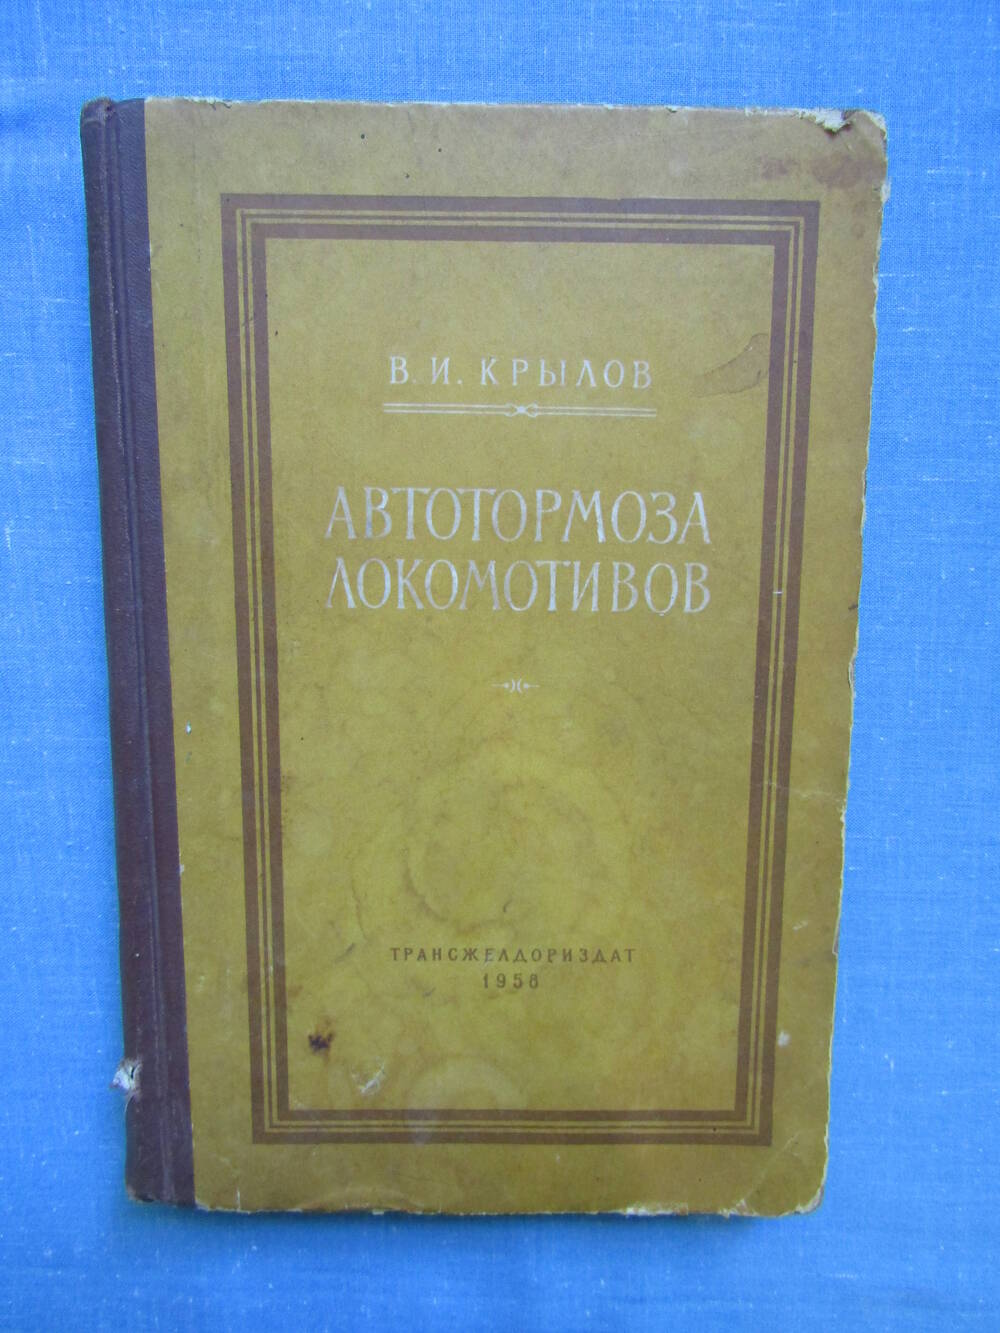 Книга Автотормоза локомотивов